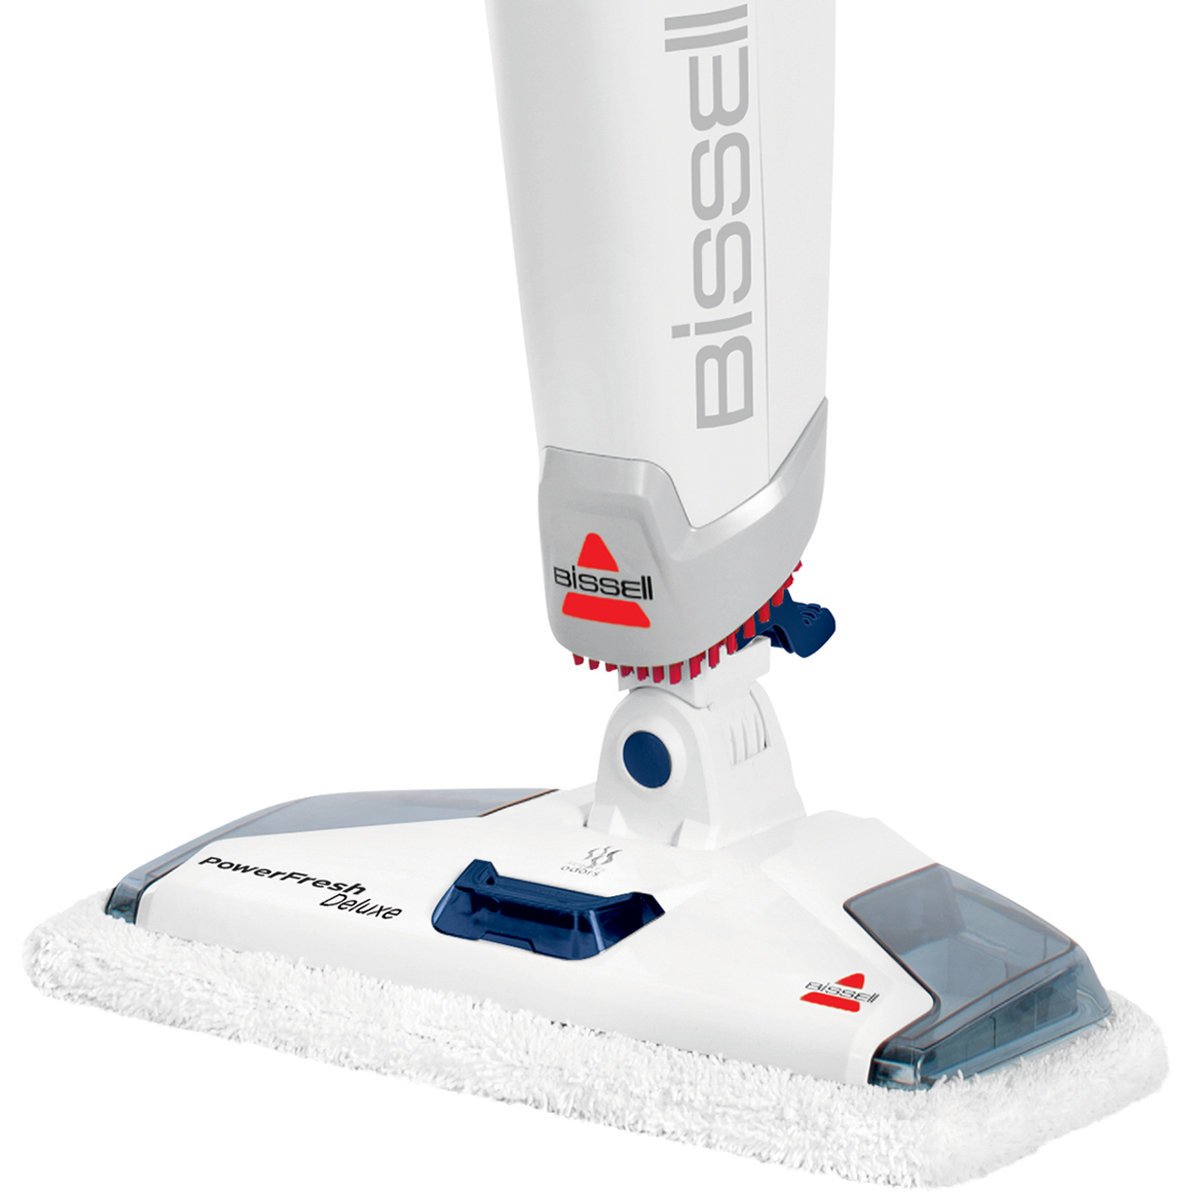 bissell powerfresh steam mop